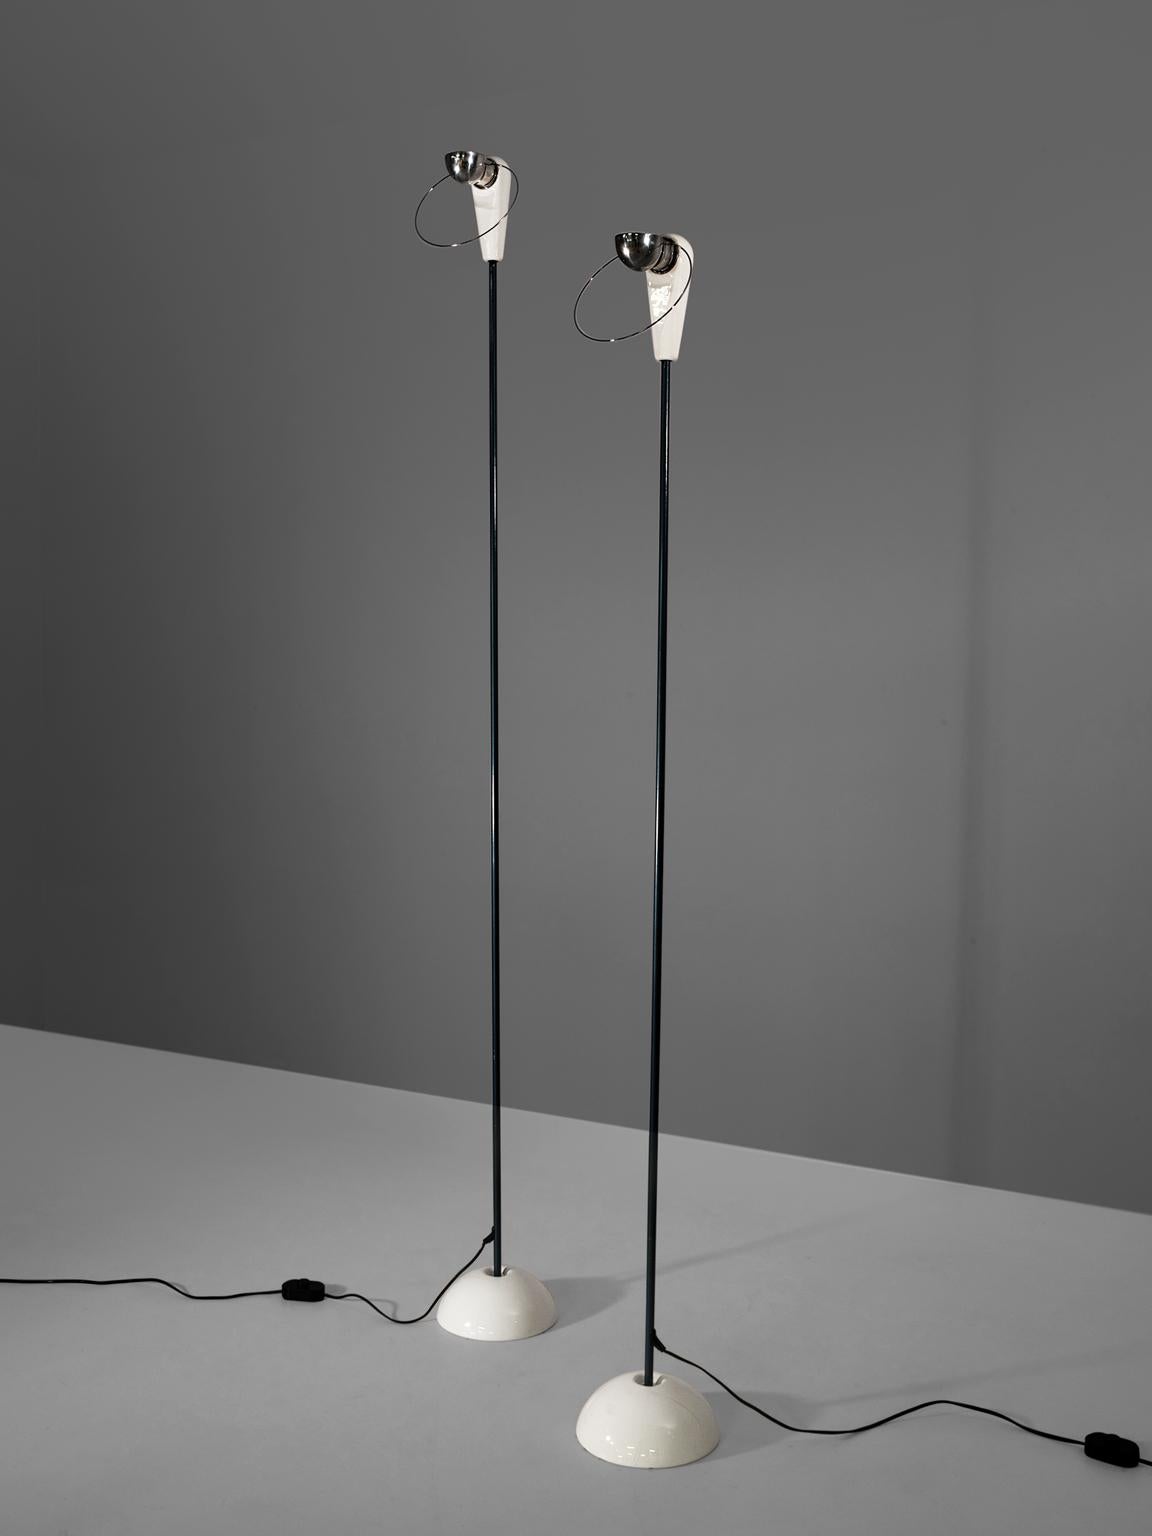 Porcelain Achille Castiglioni for Flos Set of Two 'Bip-Bip' Floor Lamps 